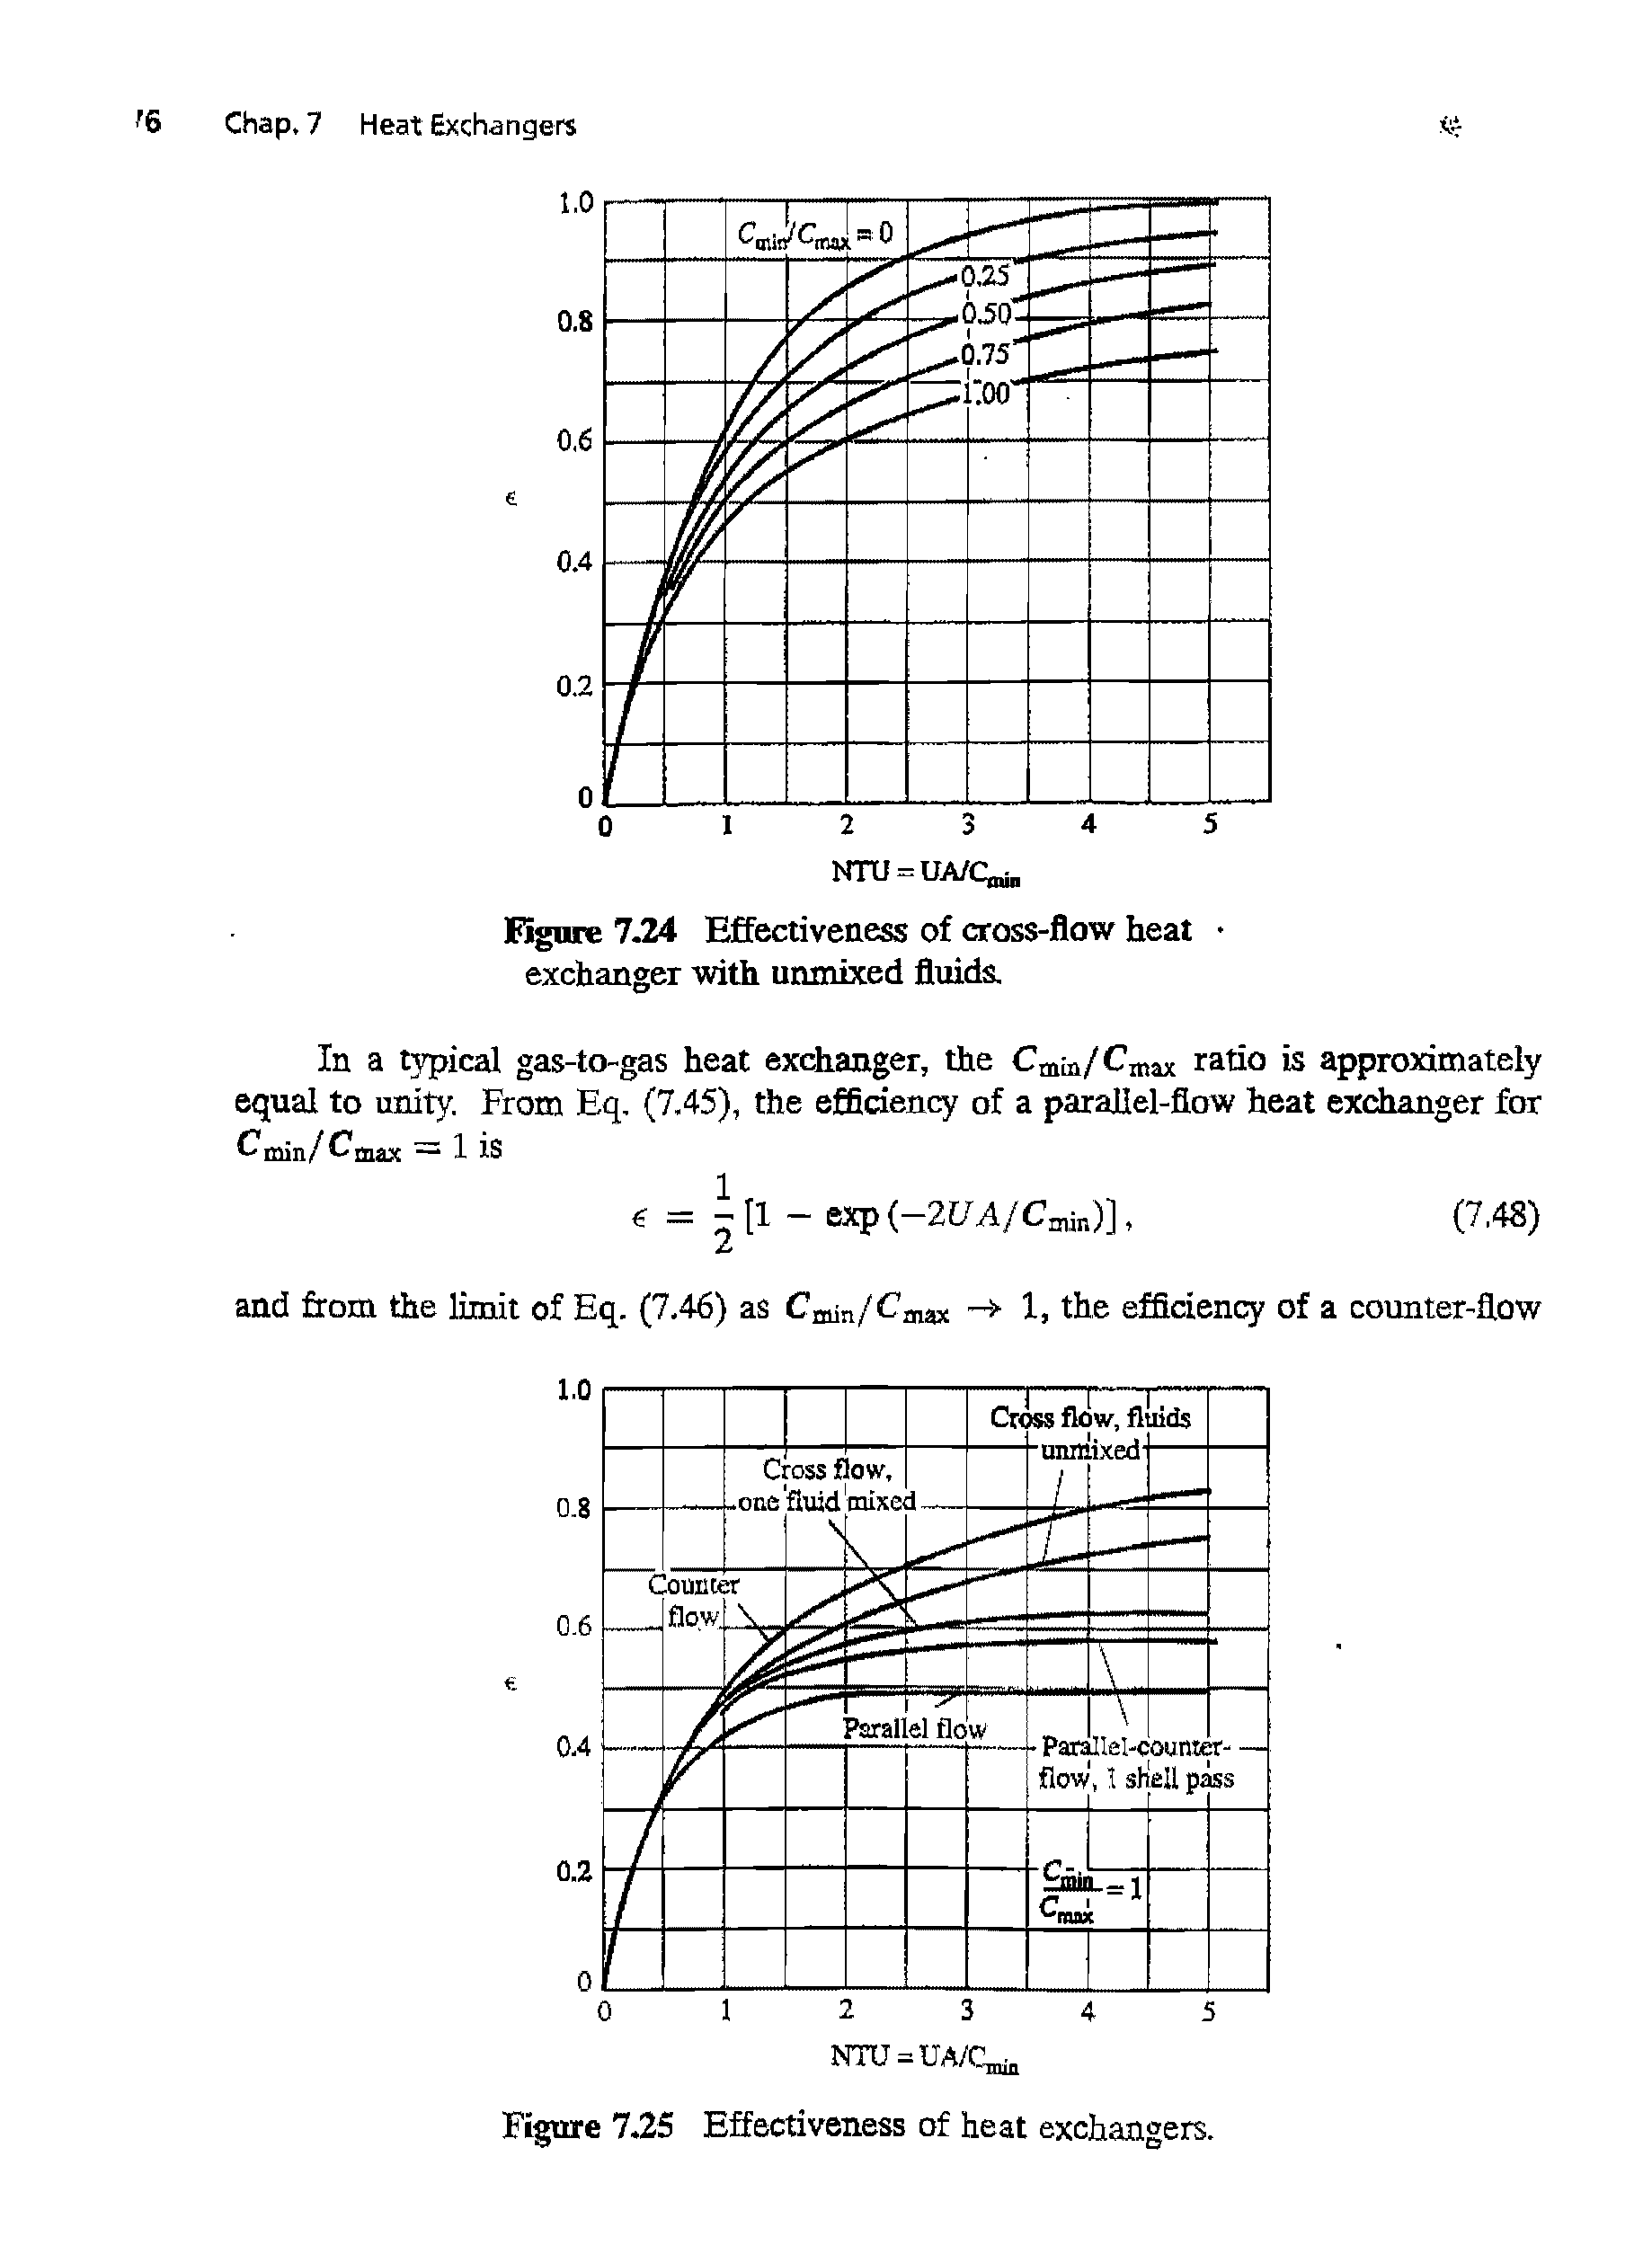 Figure 7-24 Effectiveness of cross-flow heat exchanger with unmixed fluids.